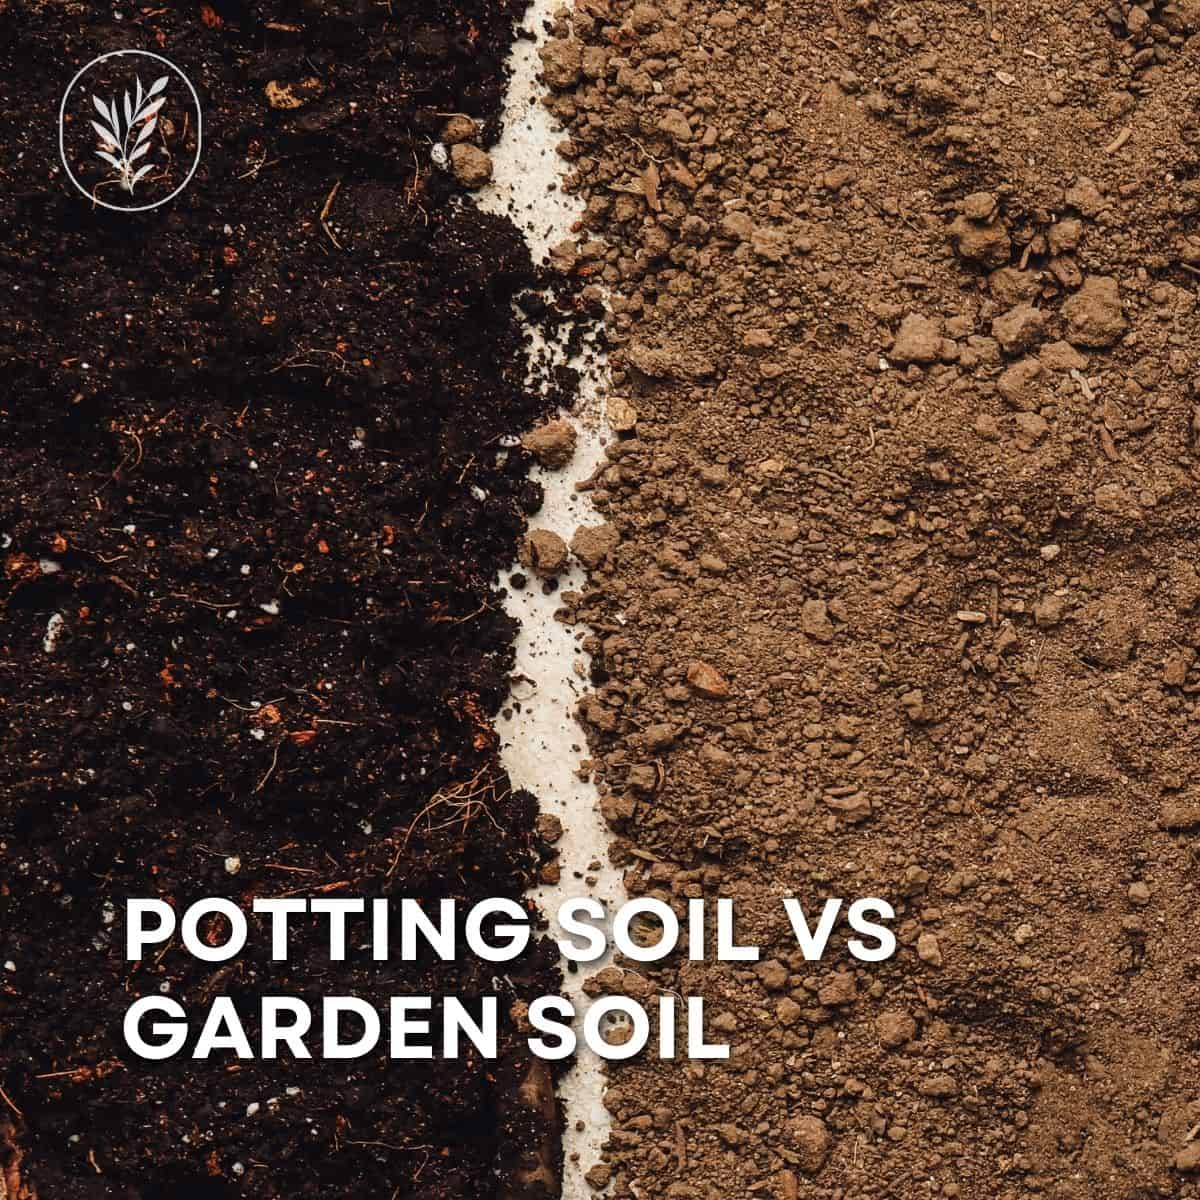 Potting soil vs garden soil via @home4theharvest